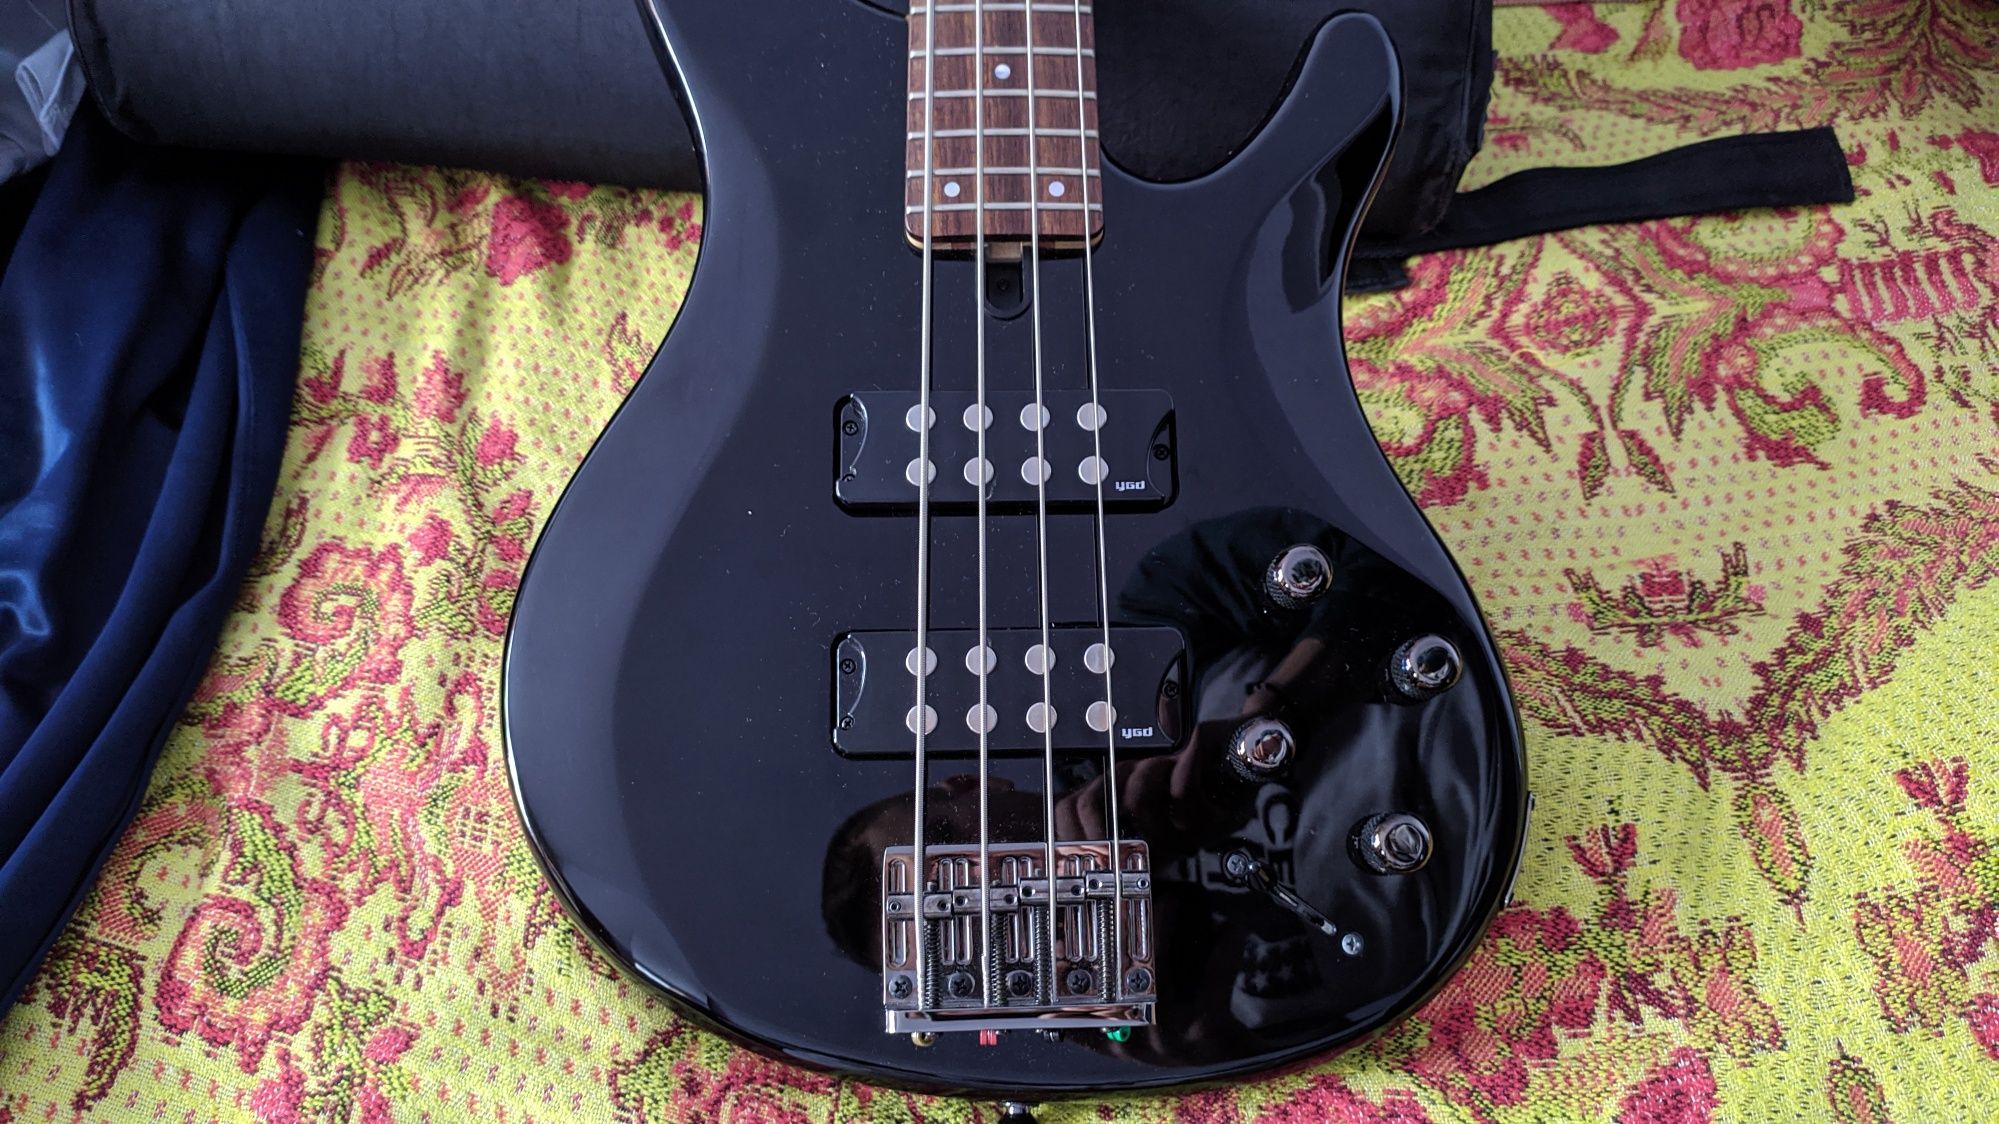 Продається новенька бас гітара - Yamaha TRBX 304